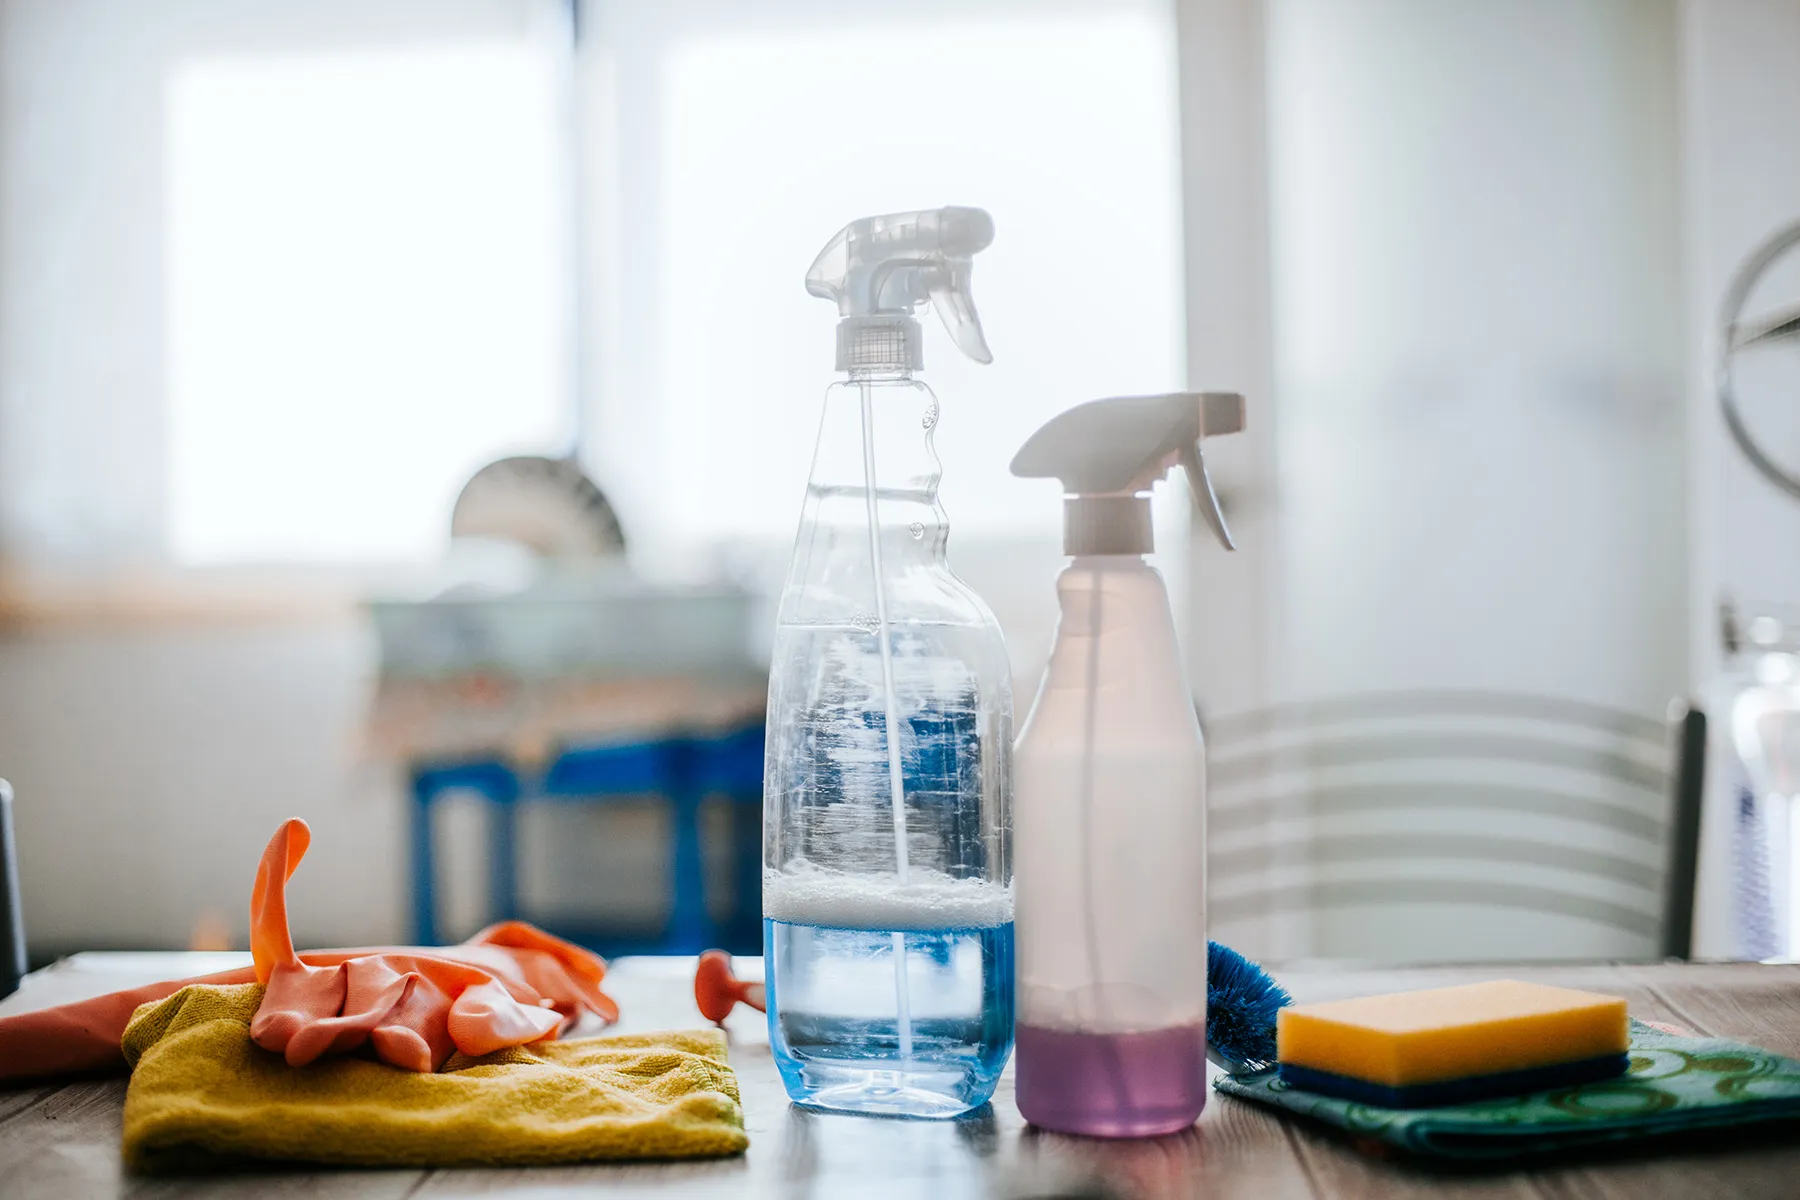 Środki czyszczące i środki higieny osobistej zawierają niebezpieczne chemikalia